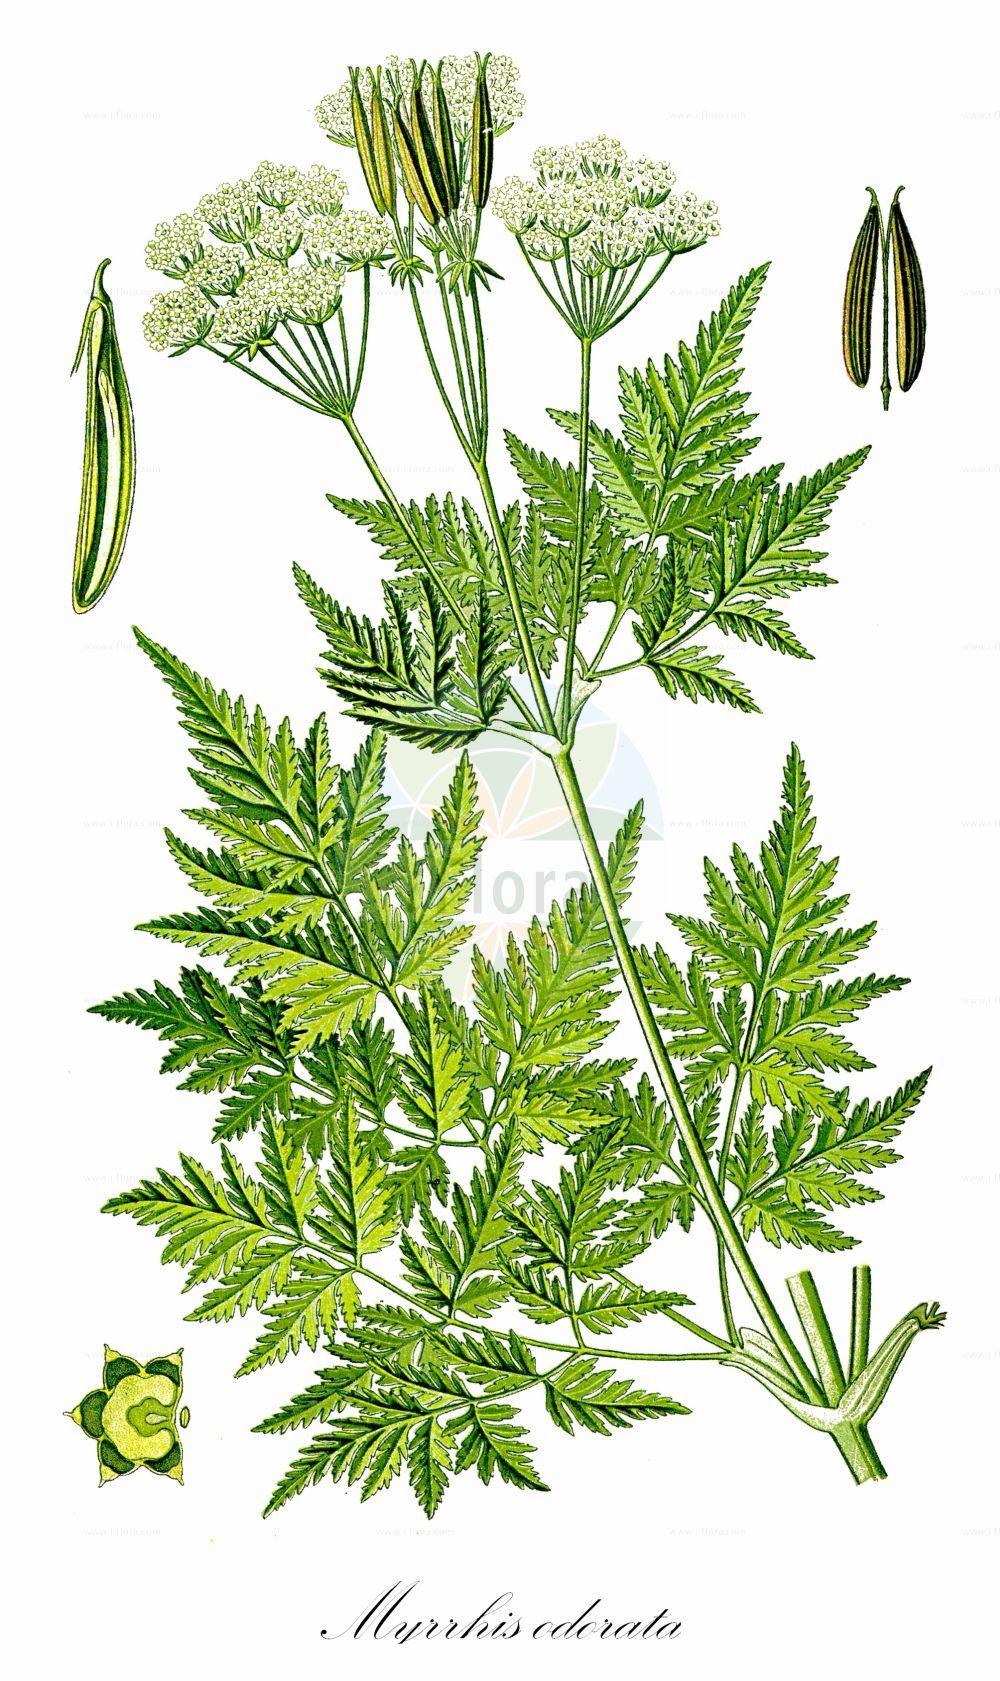 Historische Abbildung von Myrrhis odorata (Süßdolde - Sweet Cicely). Das Bild zeigt Blatt, Bluete, Frucht und Same. ---- Historical Drawing of Myrrhis odorata (Süßdolde - Sweet Cicely). The image is showing leaf, flower, fruit and seed.(Myrrhis odorata,Süßdolde,Sweet Cicely,Myrrhis odorata,Scandix odorata,Suessdolde,Sweet Cicely,Myrrh,Anise,Sweet Chervil,Myrrhis,Süßdolde,Cicely,Apiaceae,Doldengewächse,Carrot family,Blatt,Bluete,Frucht,Same,leaf,flower,fruit,seed,Thomé (1885))